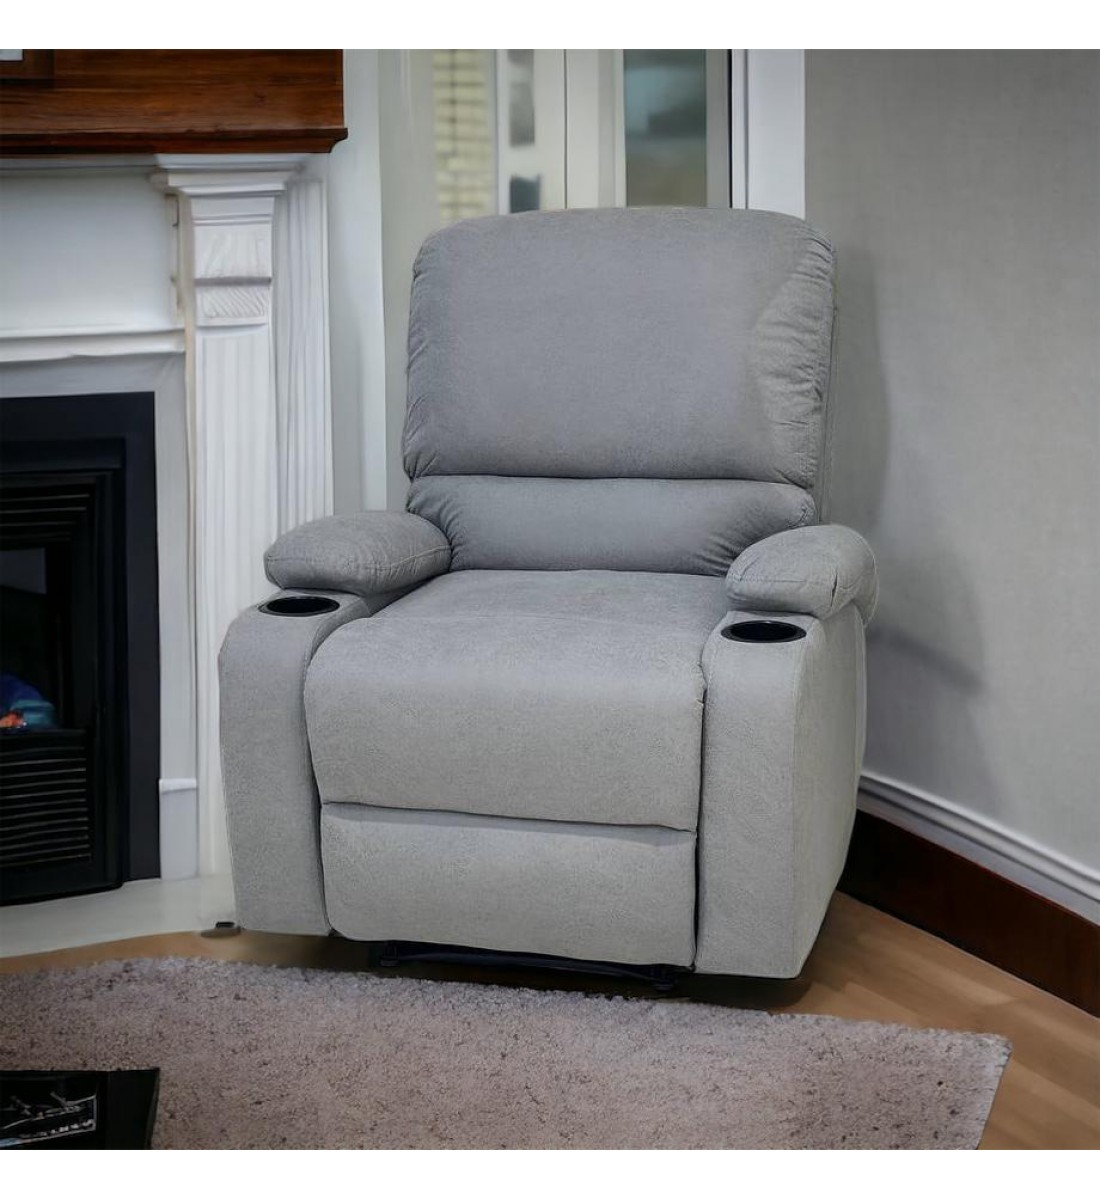 كرسي استرخاء ثابت مع حامل أكواب رصاصي 76×52×48سم